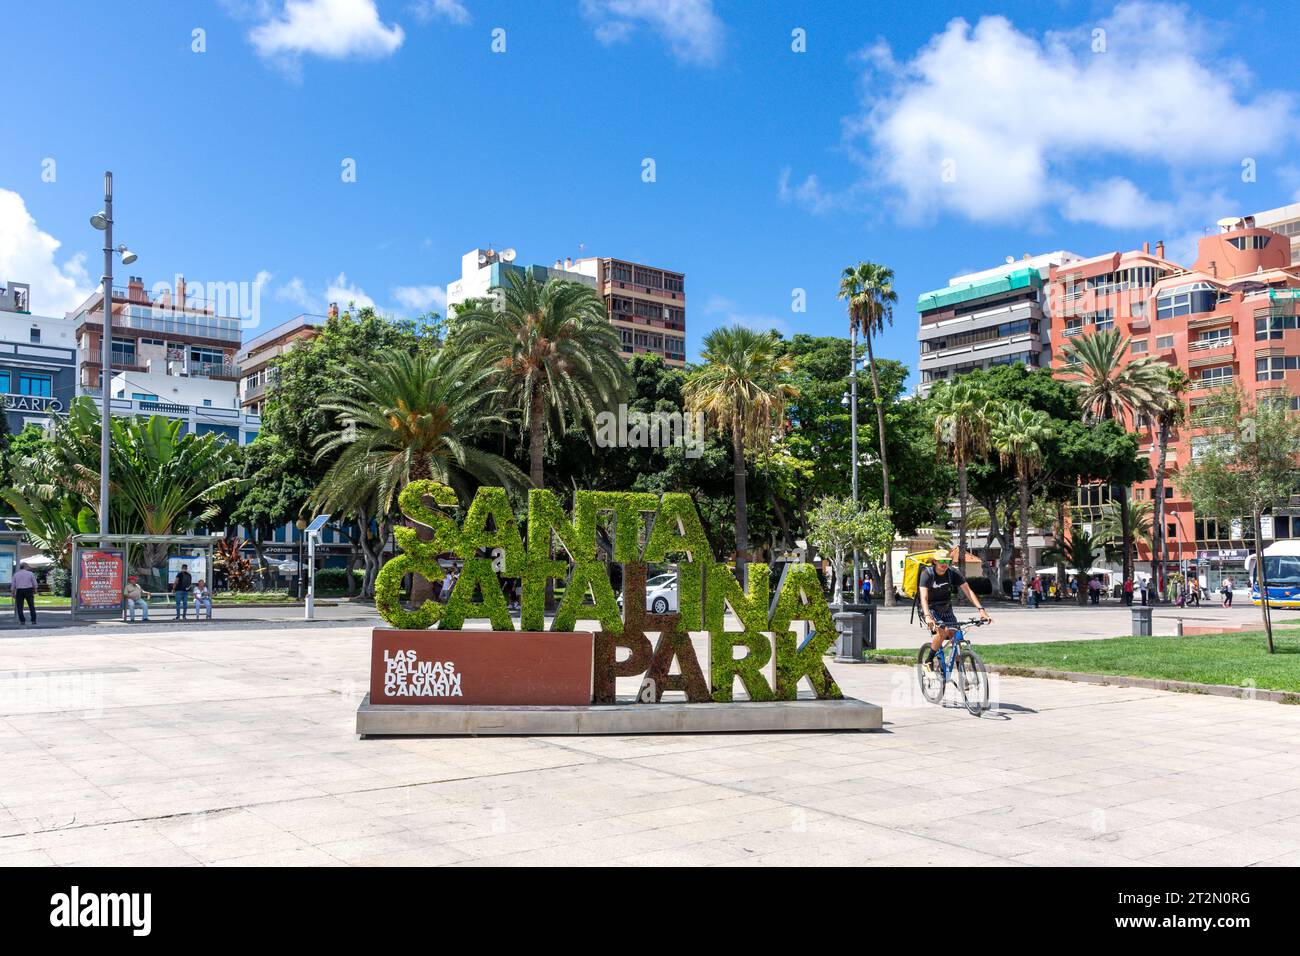 Parque de Santa Catalina (Santa Catalina Park) sign, Las Palmas de Gran Canaria, Gran Canaria, Canary Islands, Spain Stock Photo